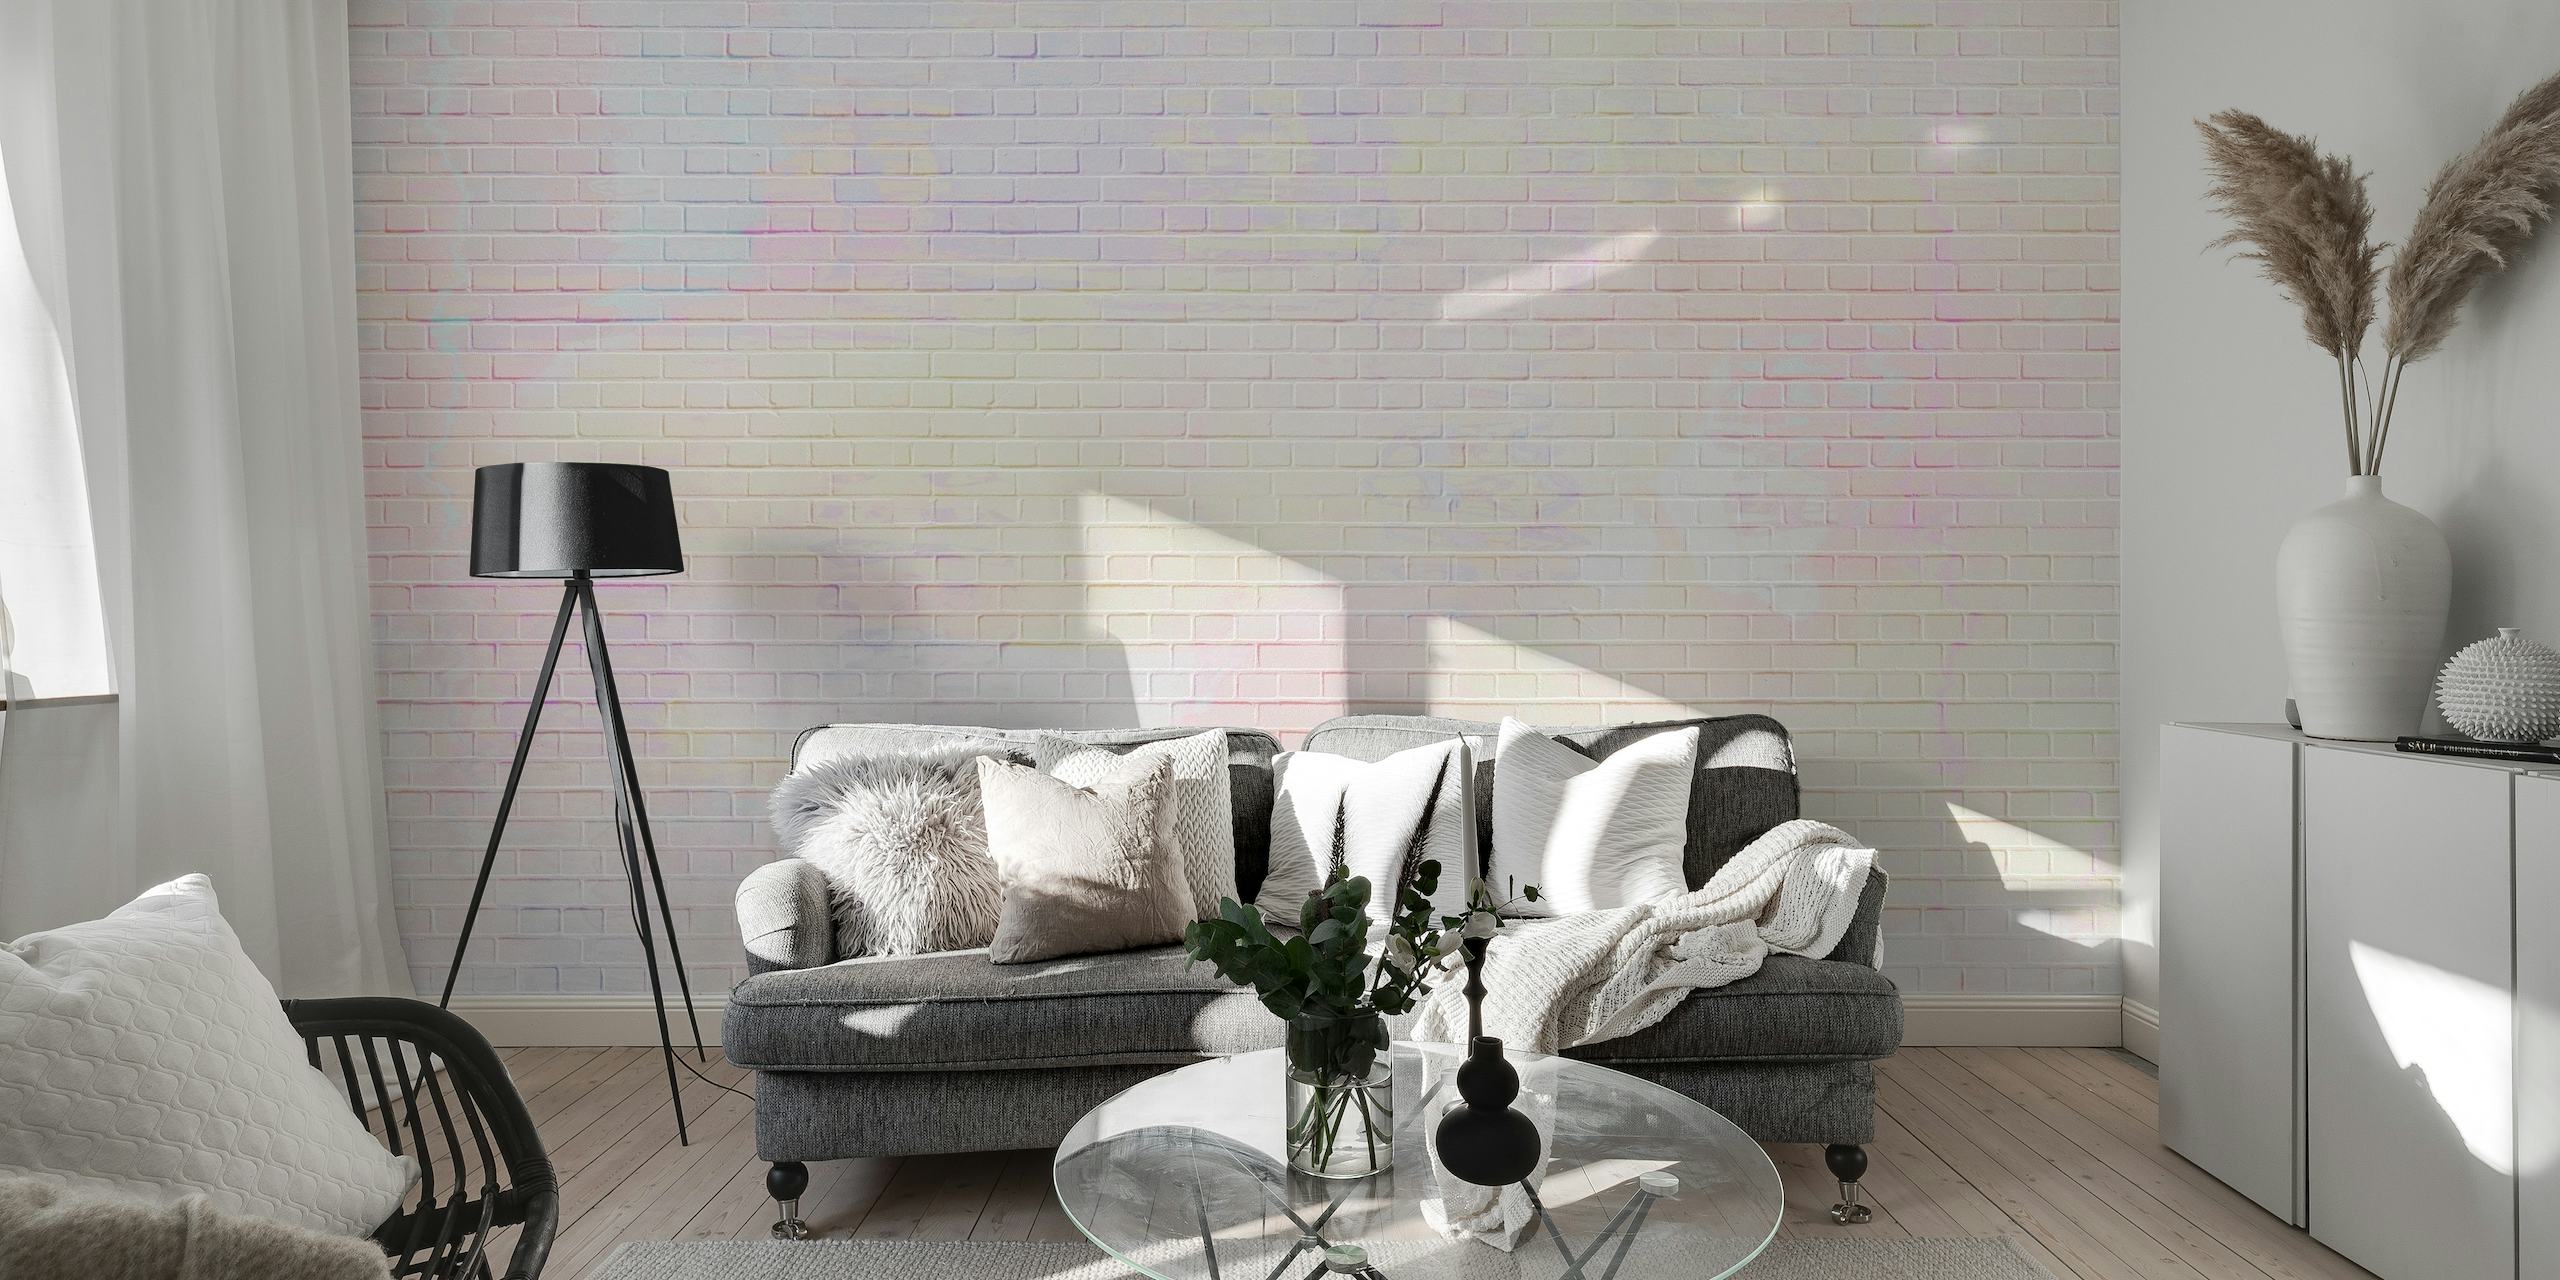 Cores pastel pintadas sobre um fotomural vinílico de parede com textura de parede de tijolos